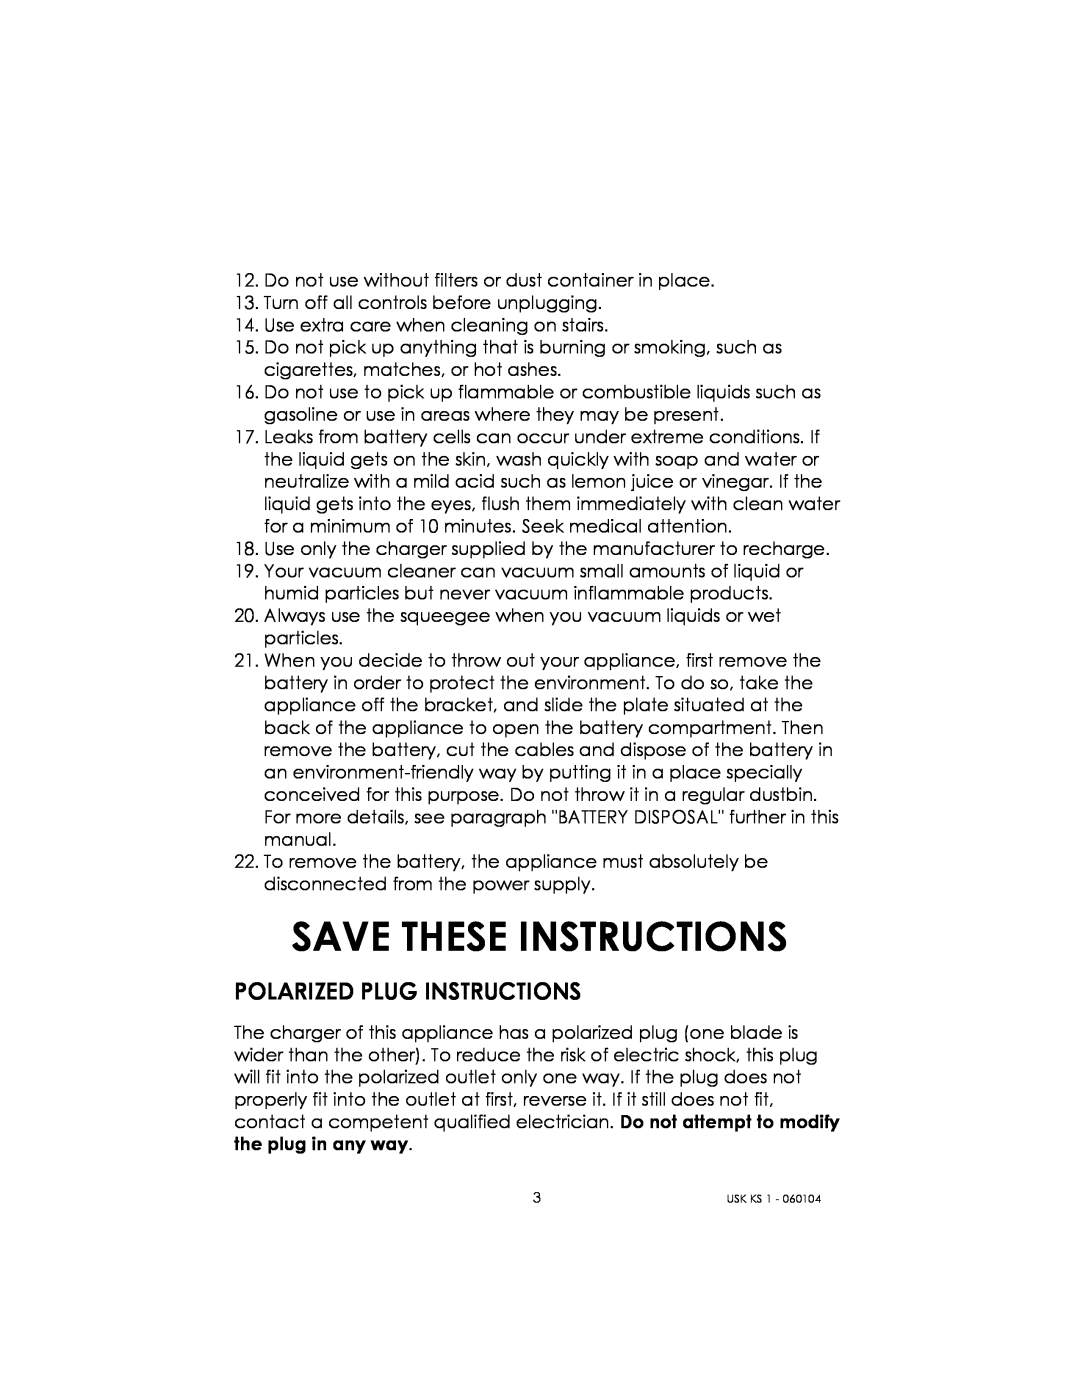 Kalorik USK KS 1 manual Save These Instructions, Polarized Plug Instructions 